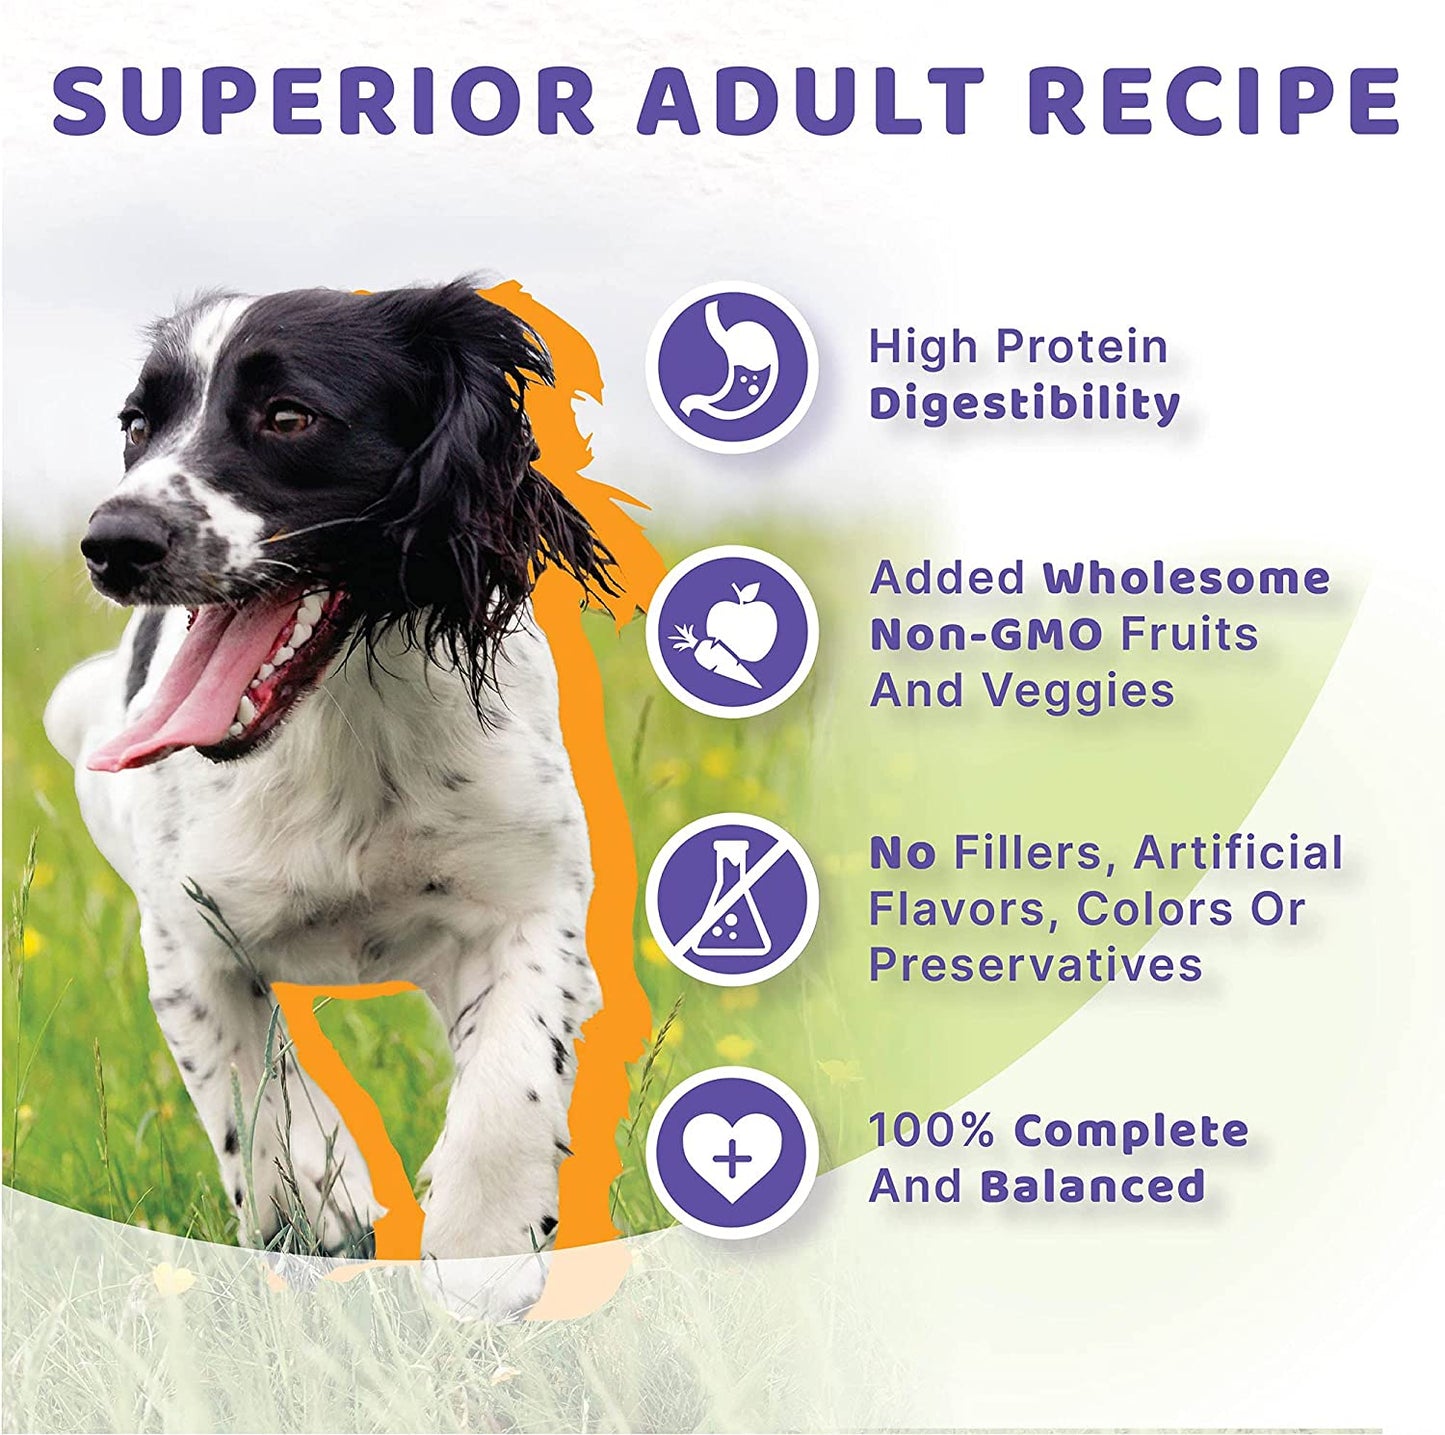 Halo Holistic Dog Food, Chicken & Chicken Liver Recipe, Dry Dog Food Bag, Adult Formula, 21-Lb Bag